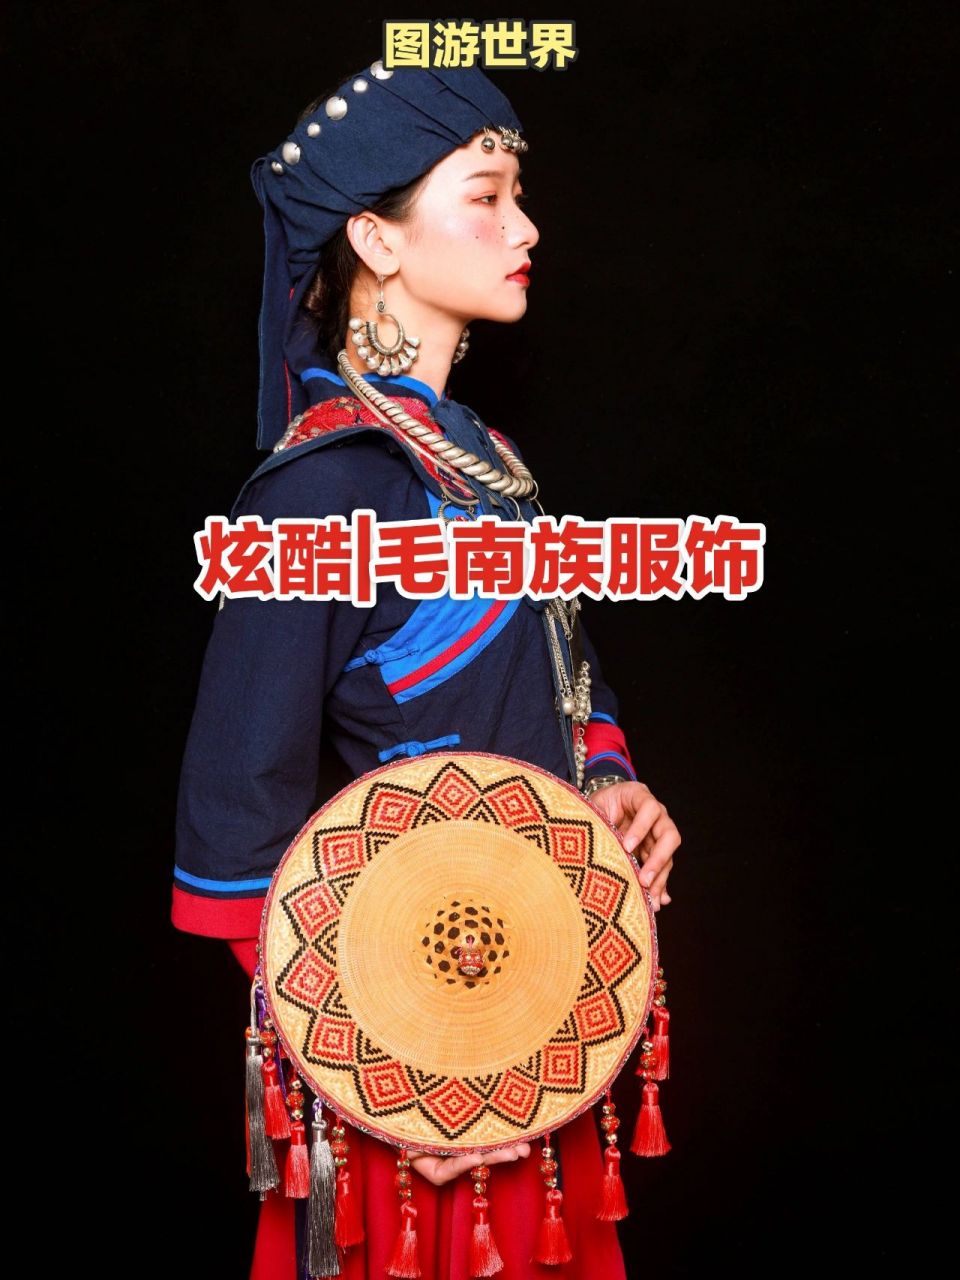 毛南族服饰特点图片